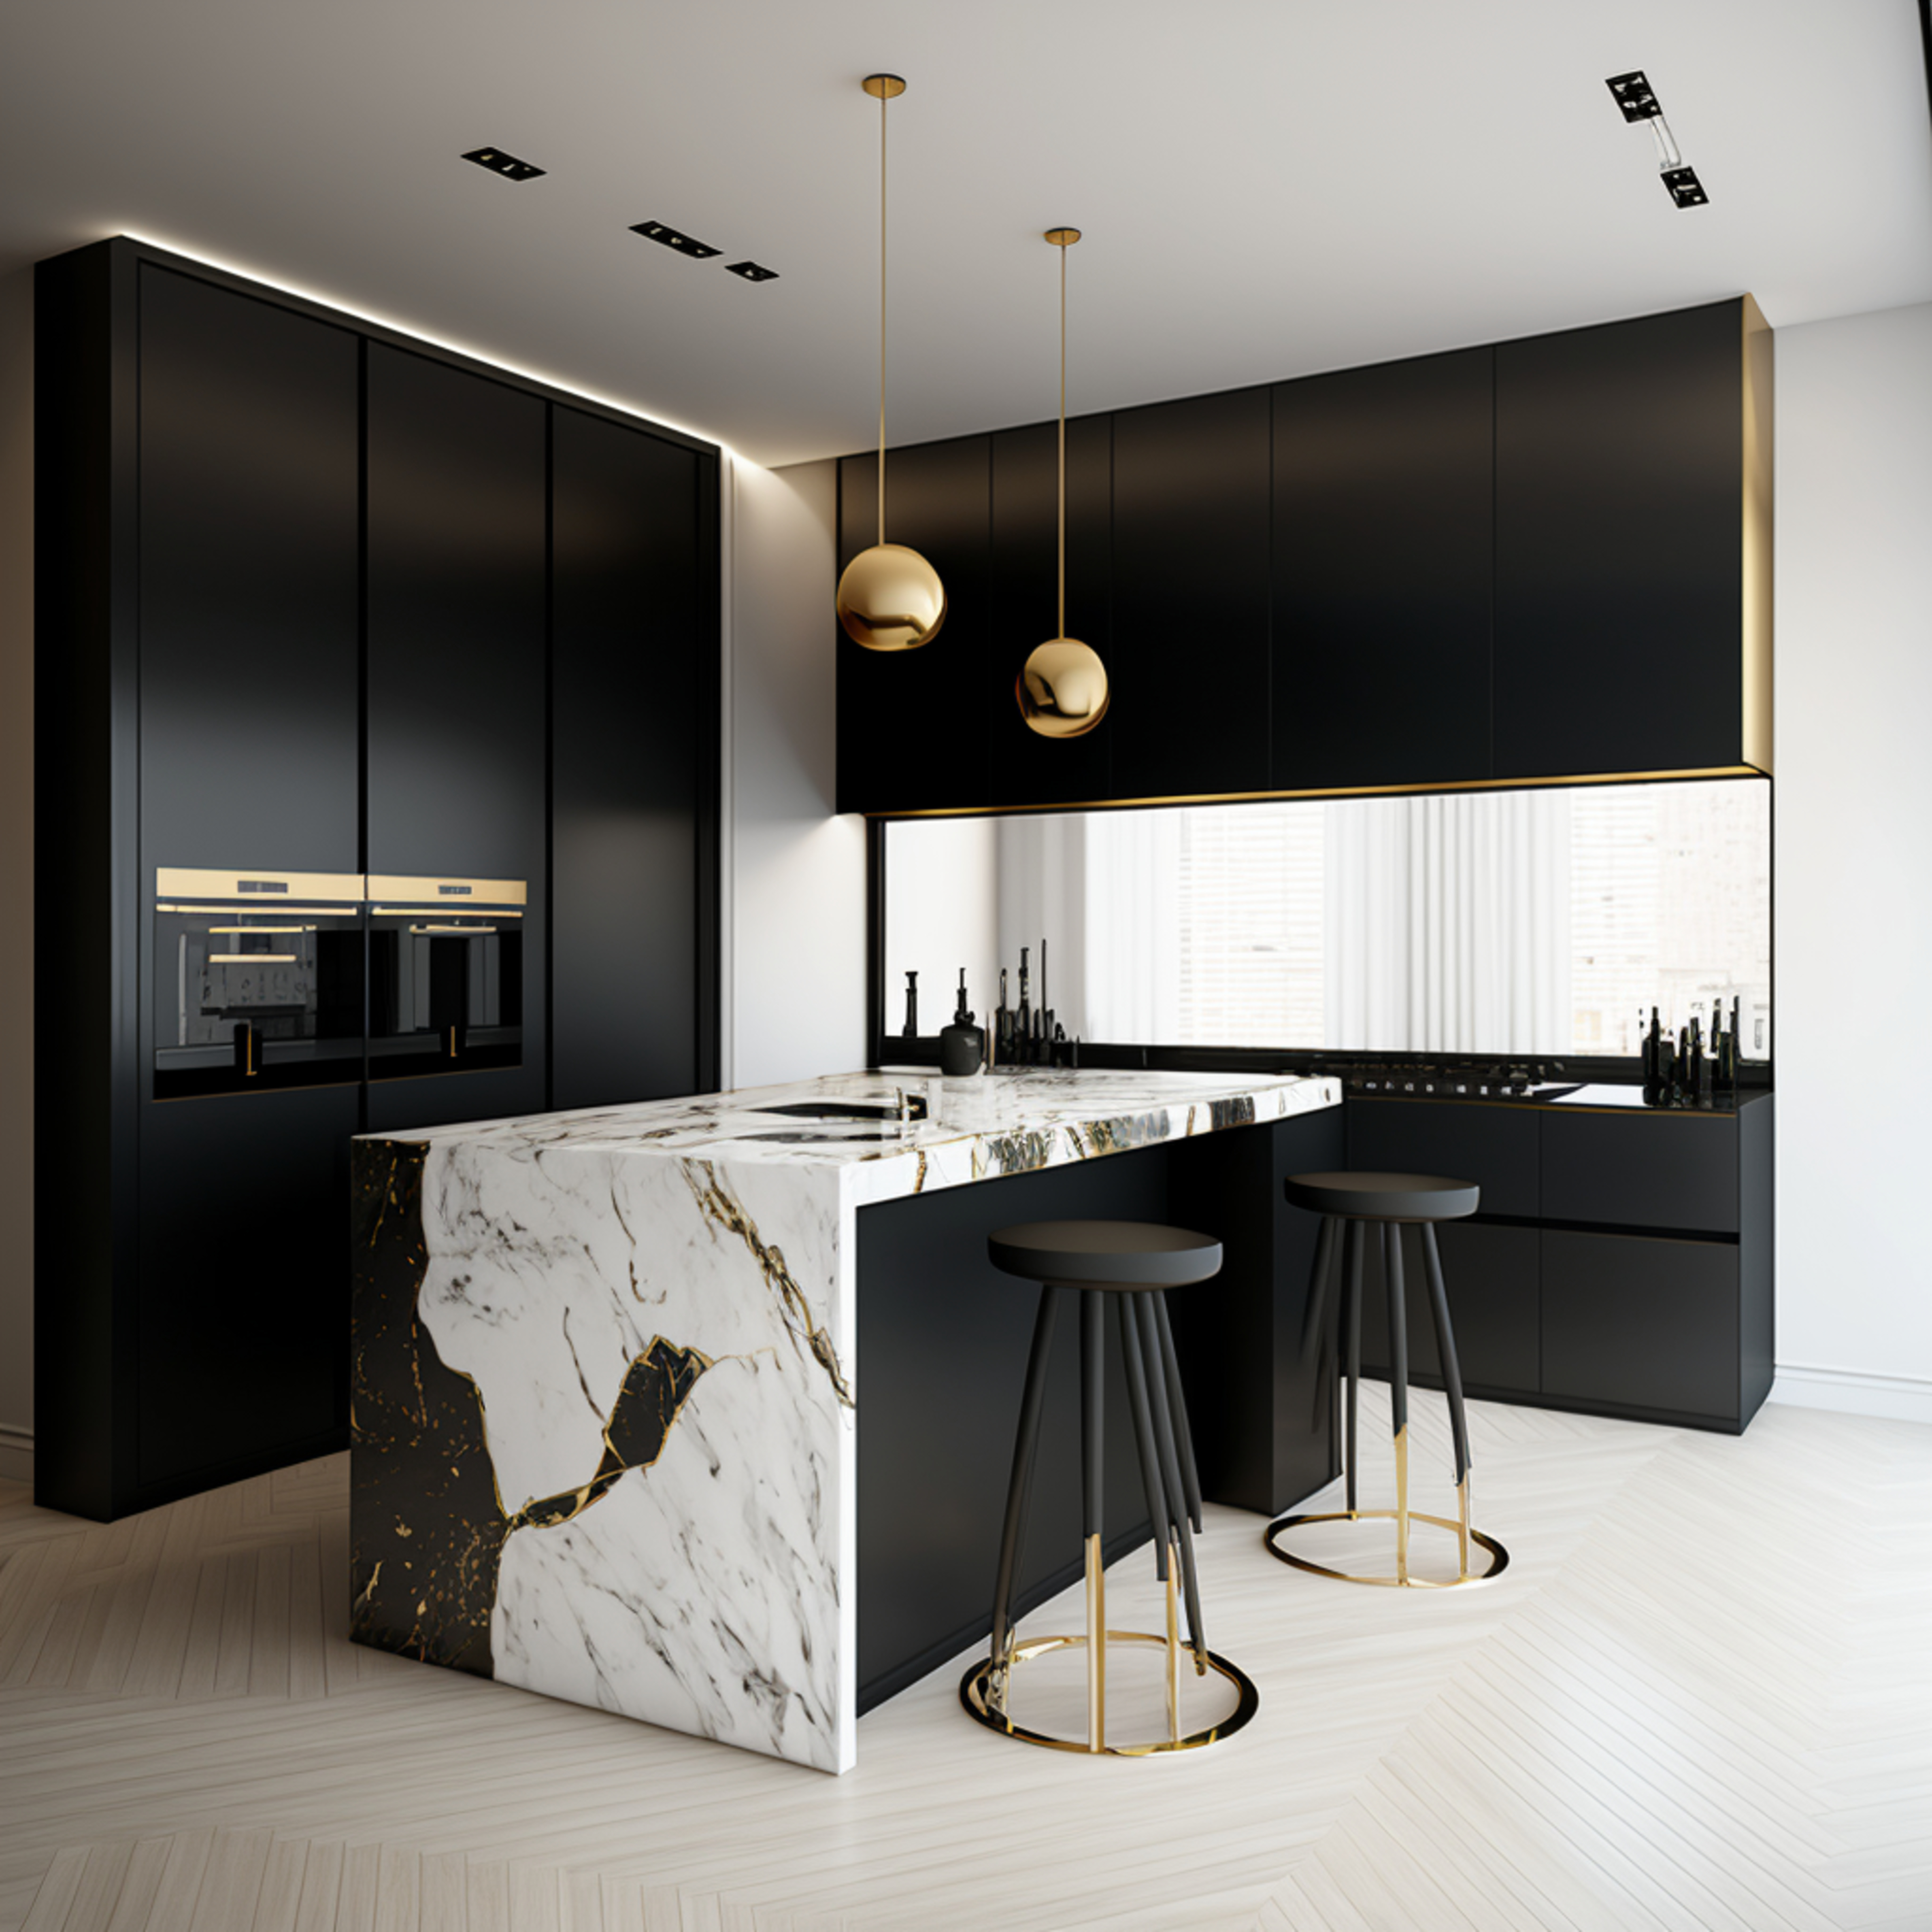 Diseño excepcional en la cocina: un espacio que inspira